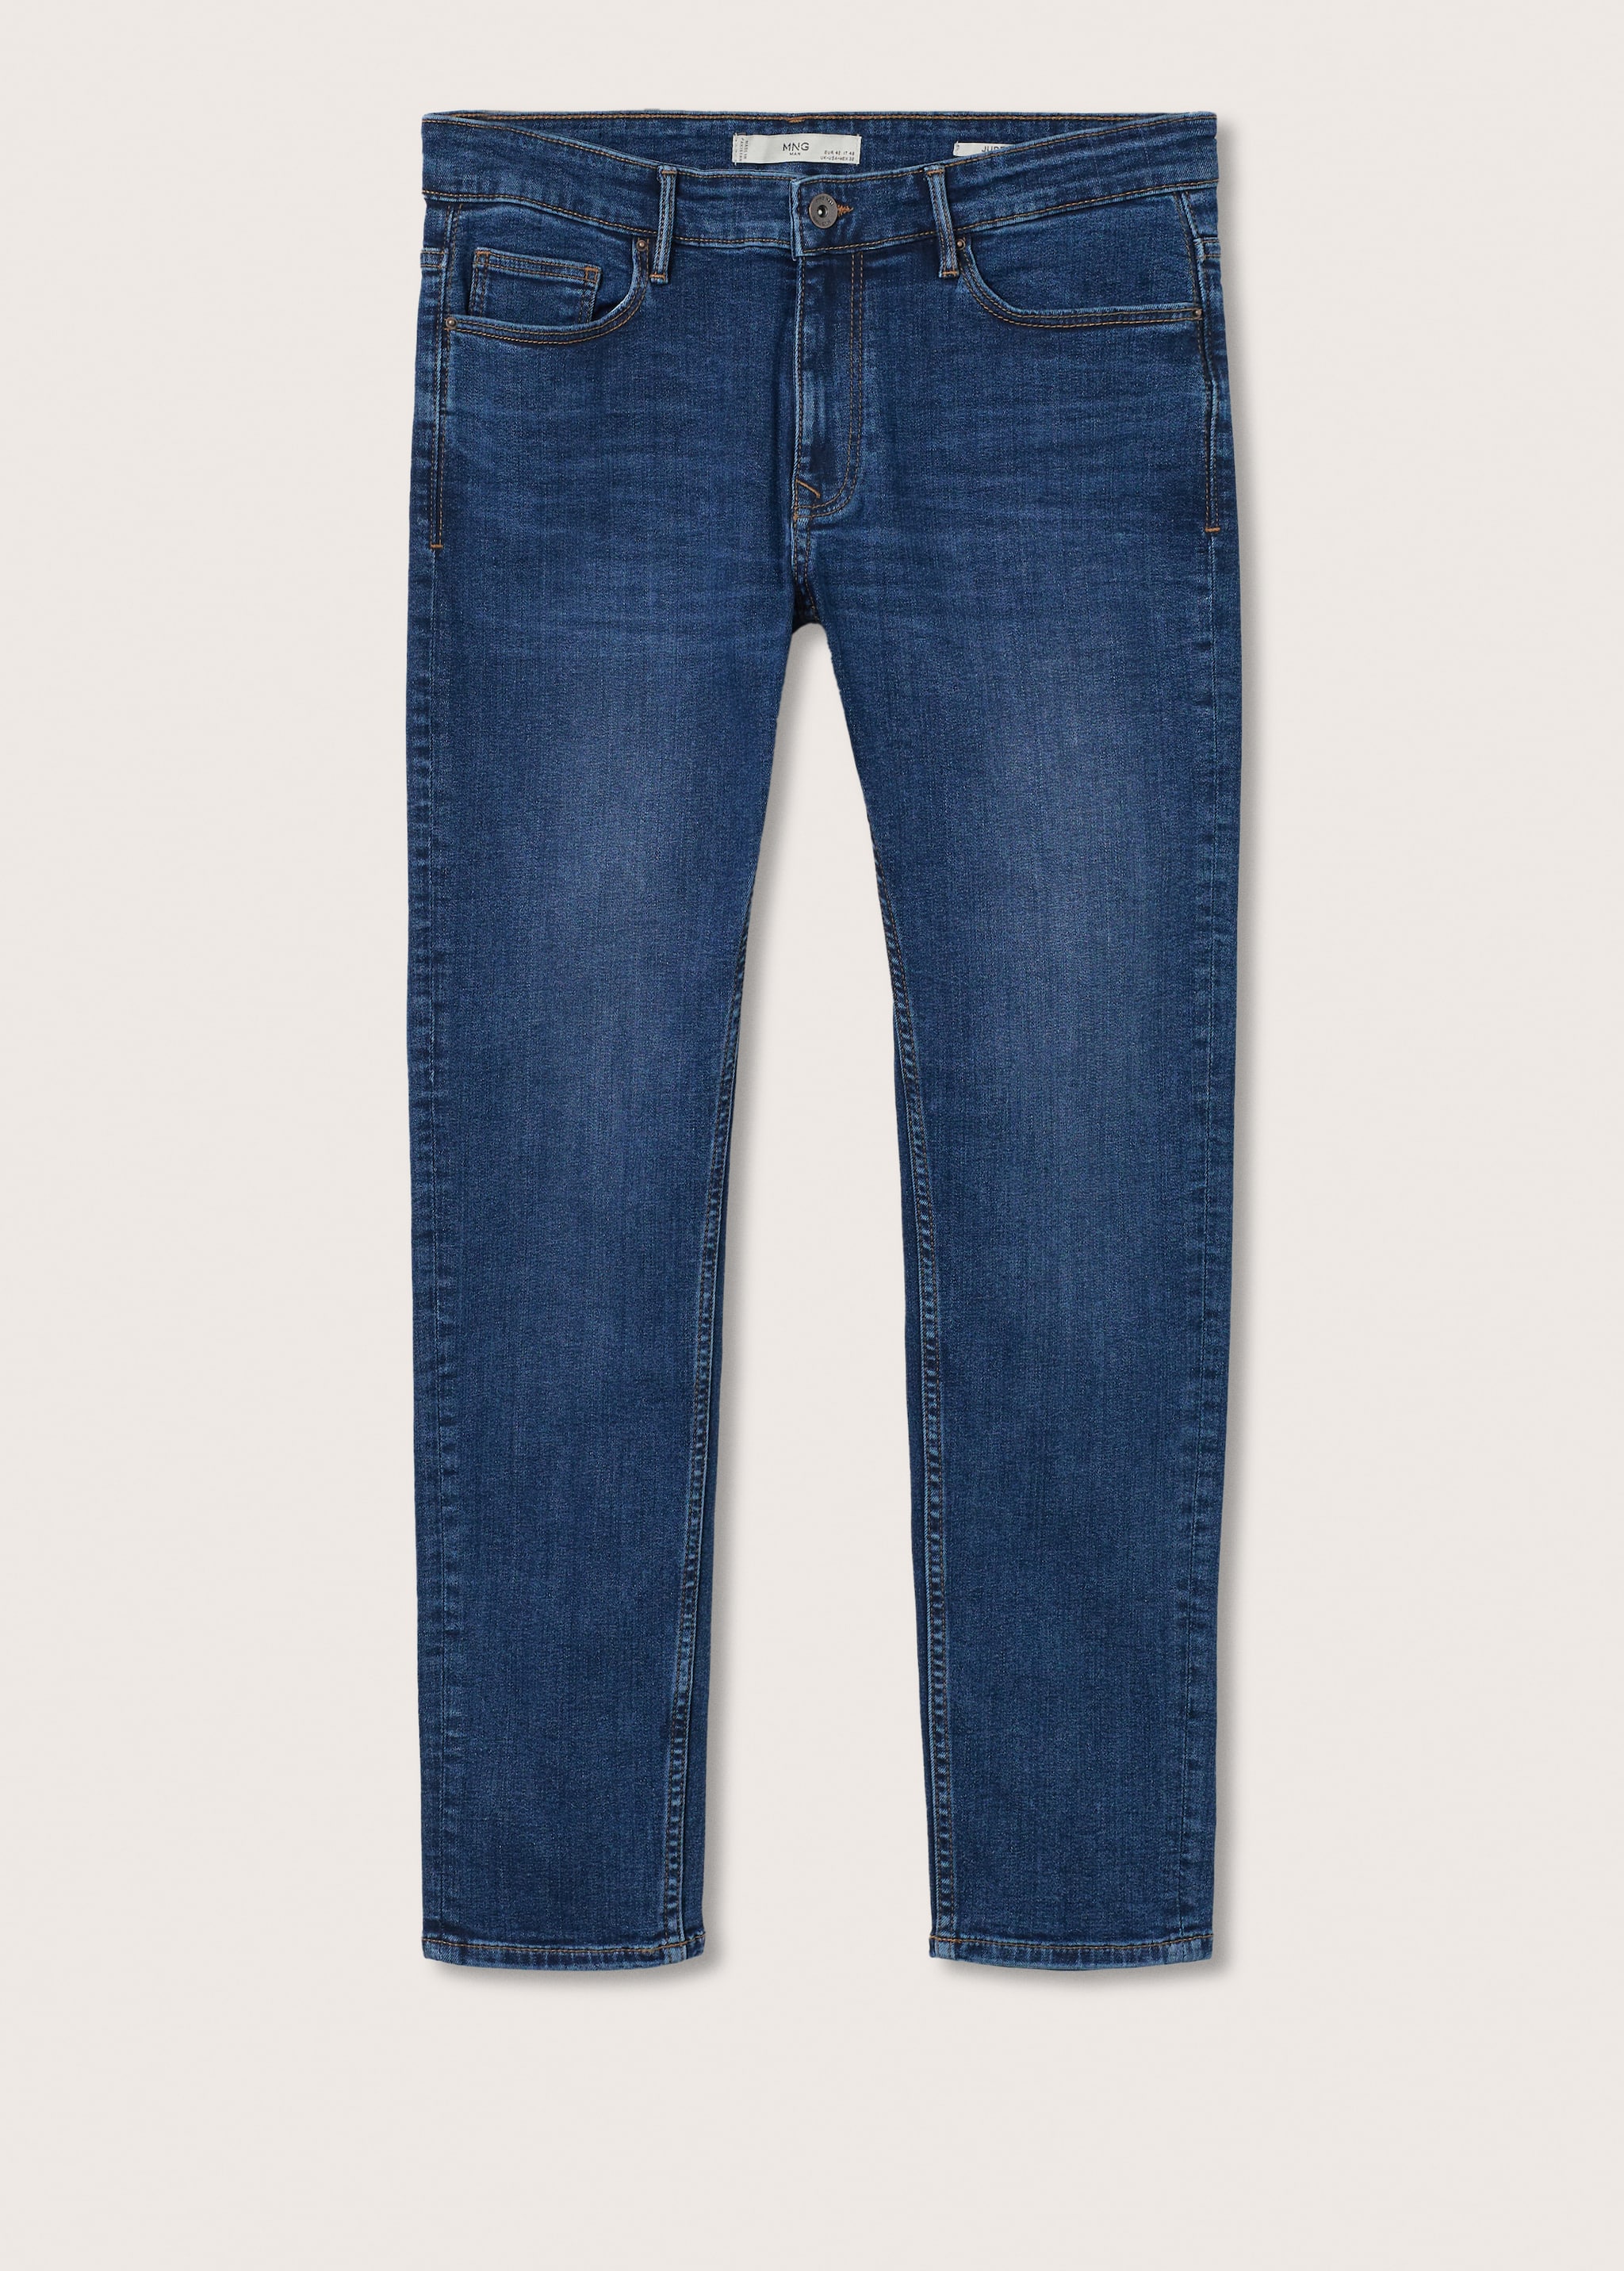 Jeans Jude skinny lavado oscuro - Artículo sin modelo